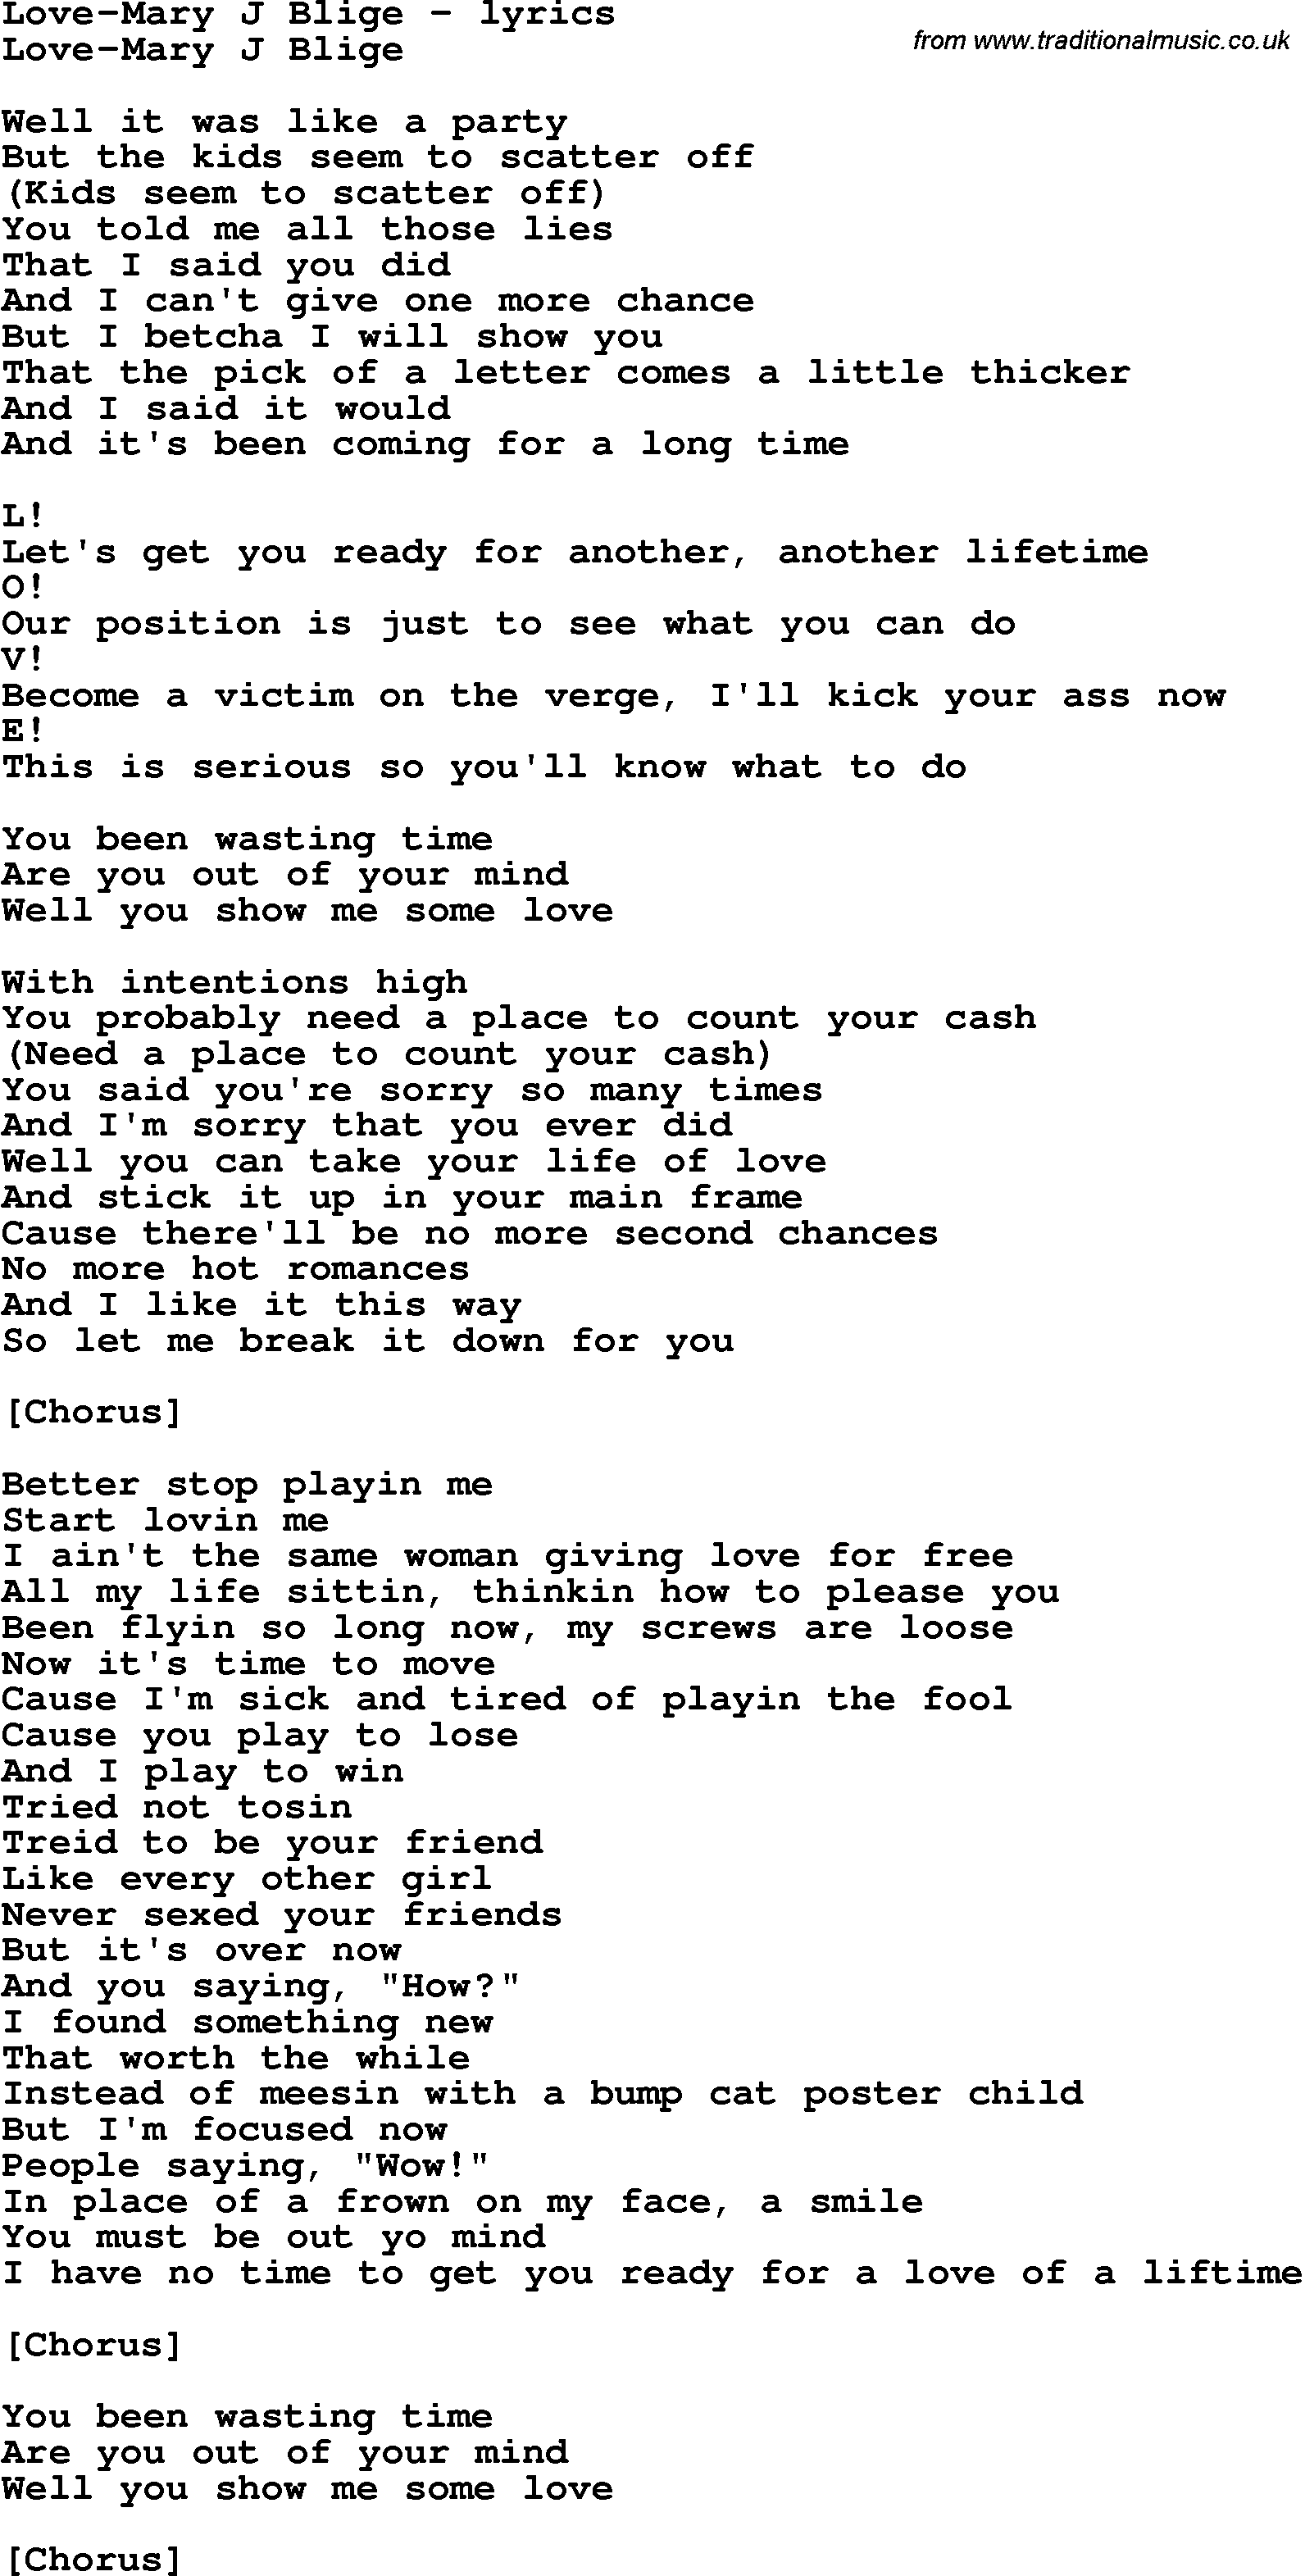 Love Song Lyrics for: Love-Mary J Blige